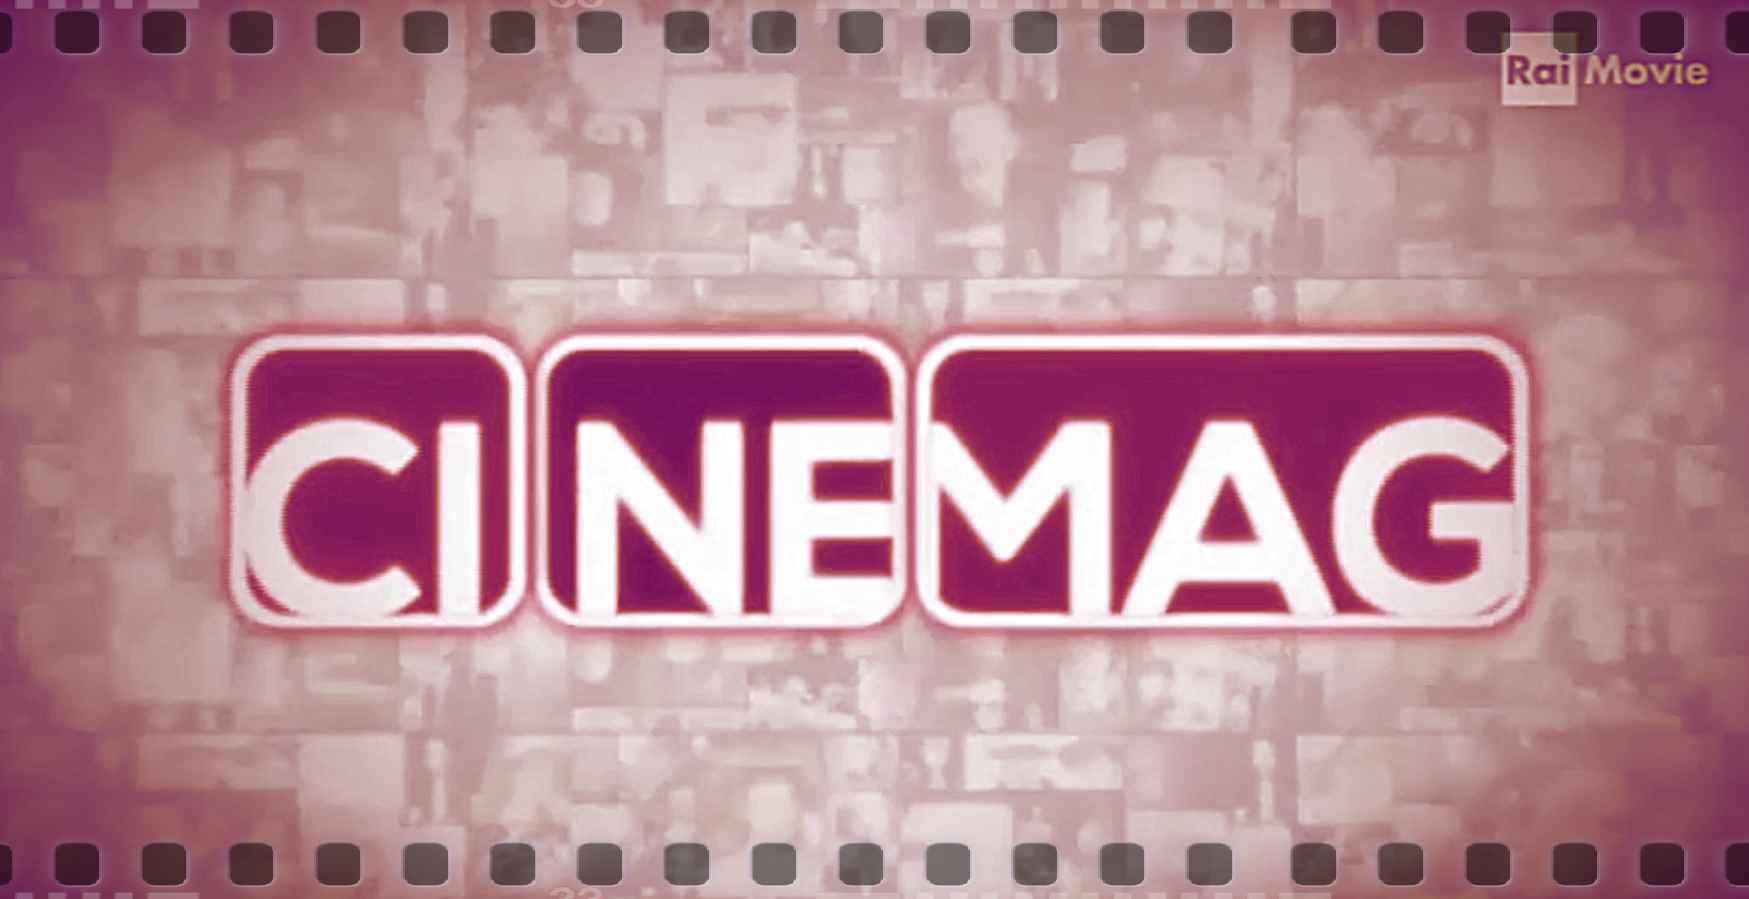 Cinemag